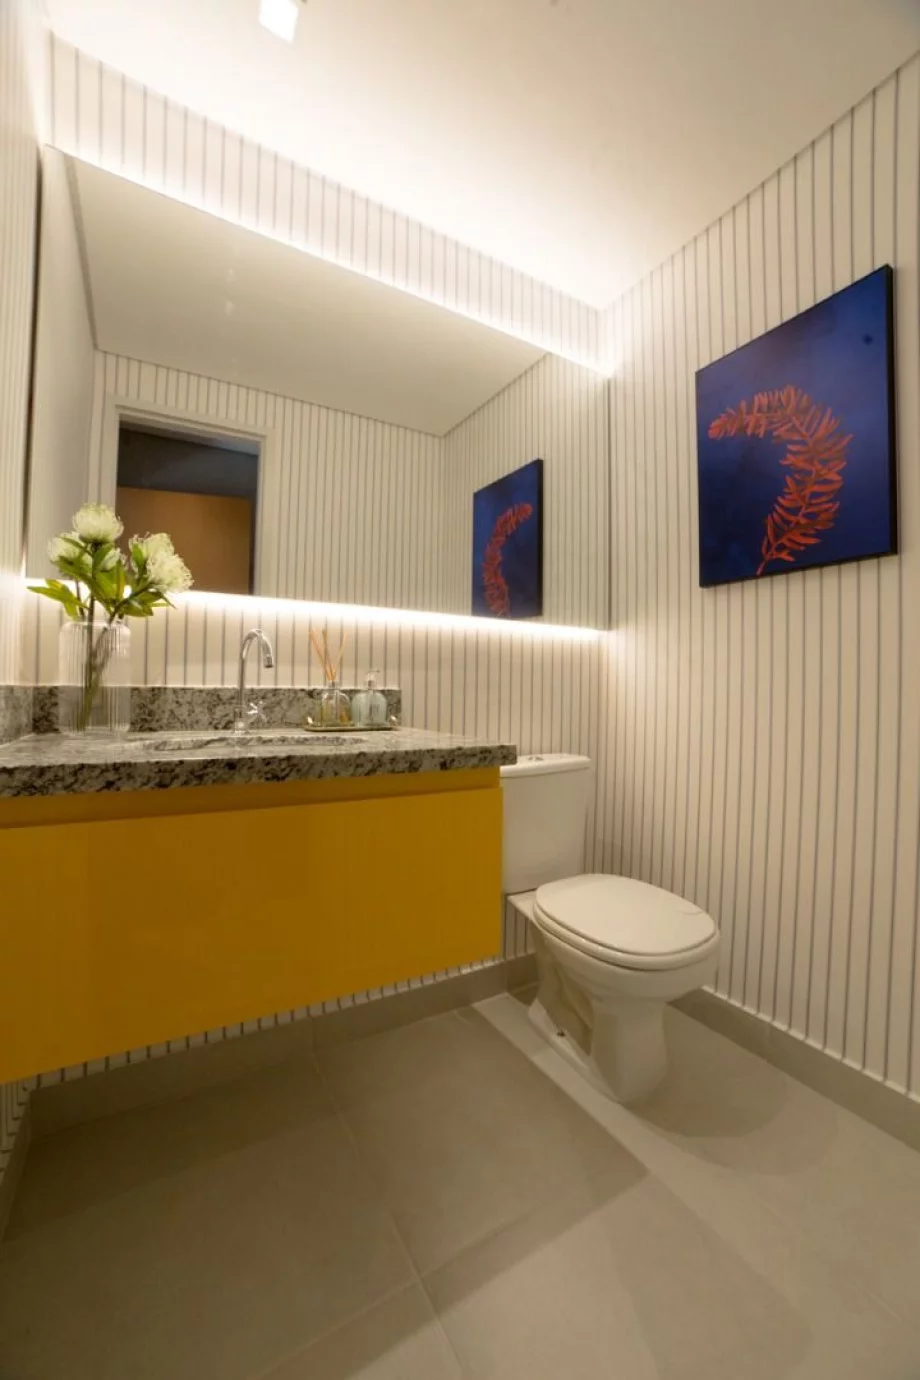 BANHEIRO - Fotos reais do apartamento decorado de 90 m².